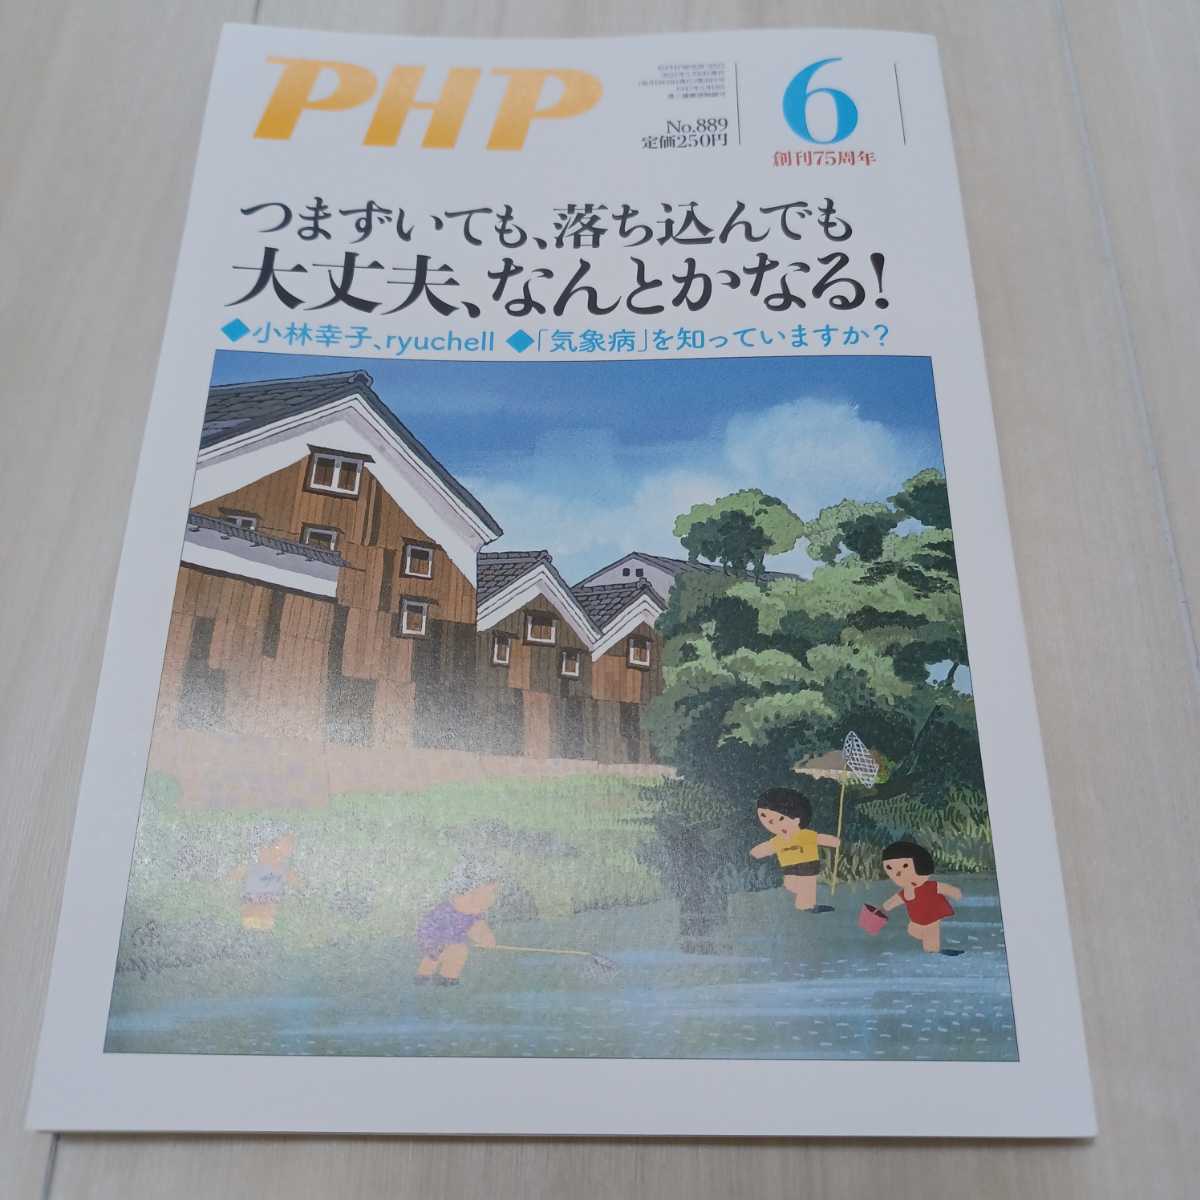 月間　PHP No.889 6月号 つまずいても、落ち込んでも大丈夫、なんとかなる！ PHP研究所　小林幸子 ryuchell 須崎優衣　SHOWKO_画像1